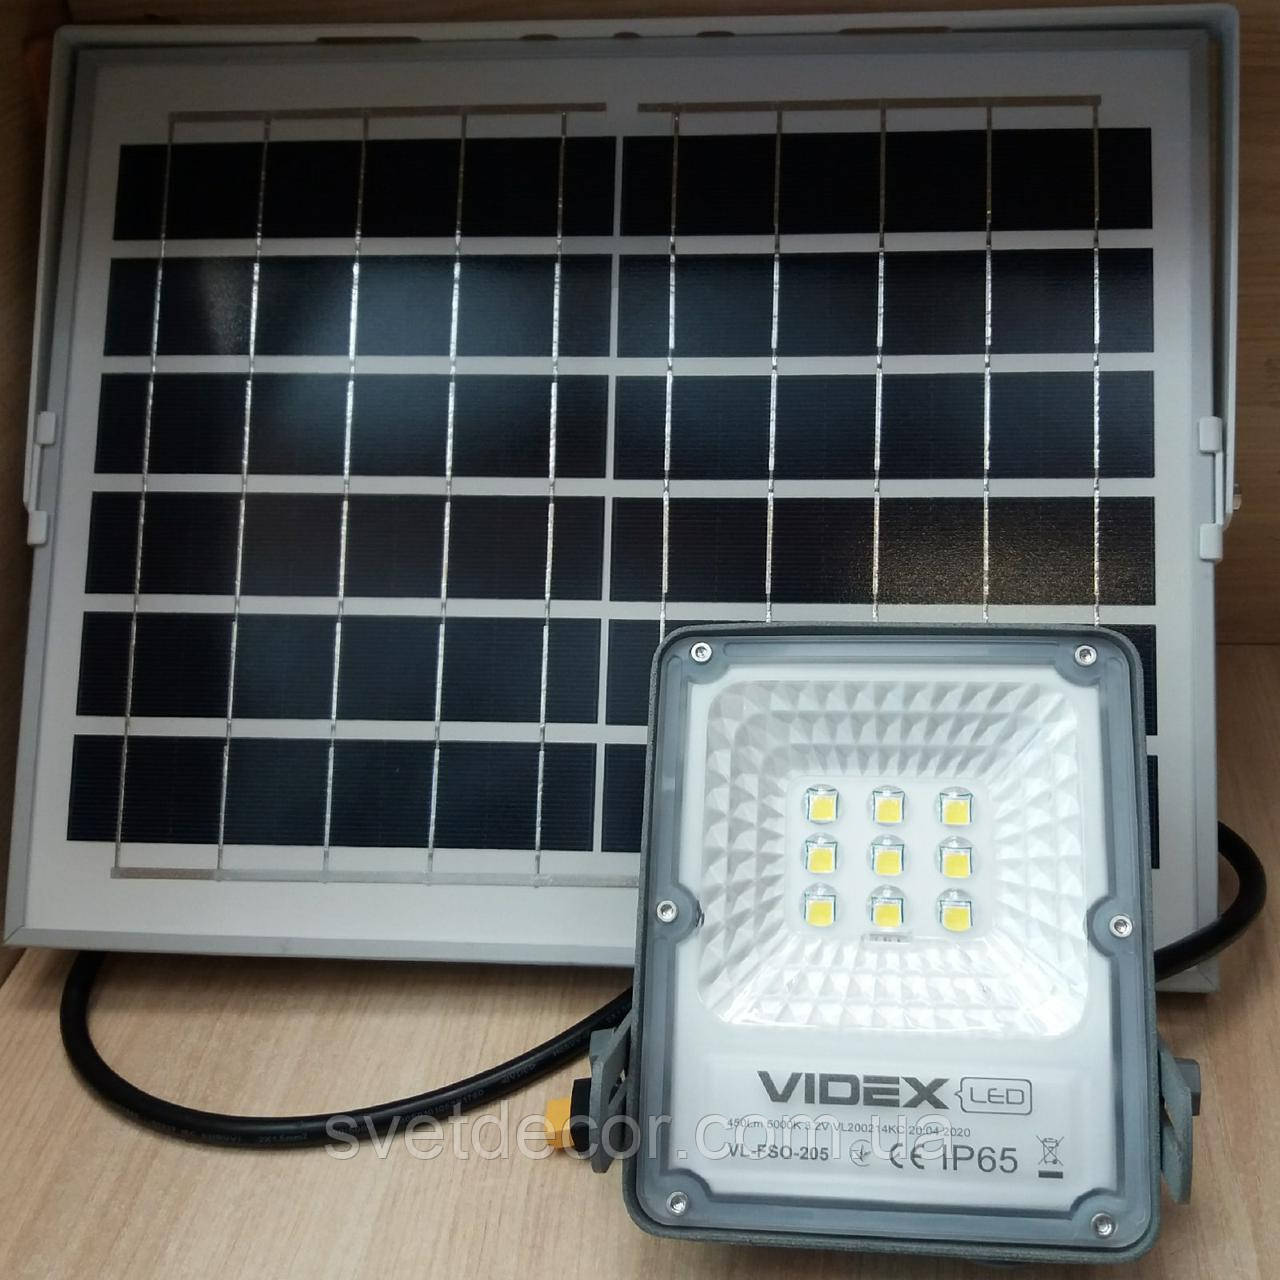 Світлодіодний прожектор LED автономний VIDEX 10W 5000K 3.2 V VL-FSO-205 на сонячній батареї